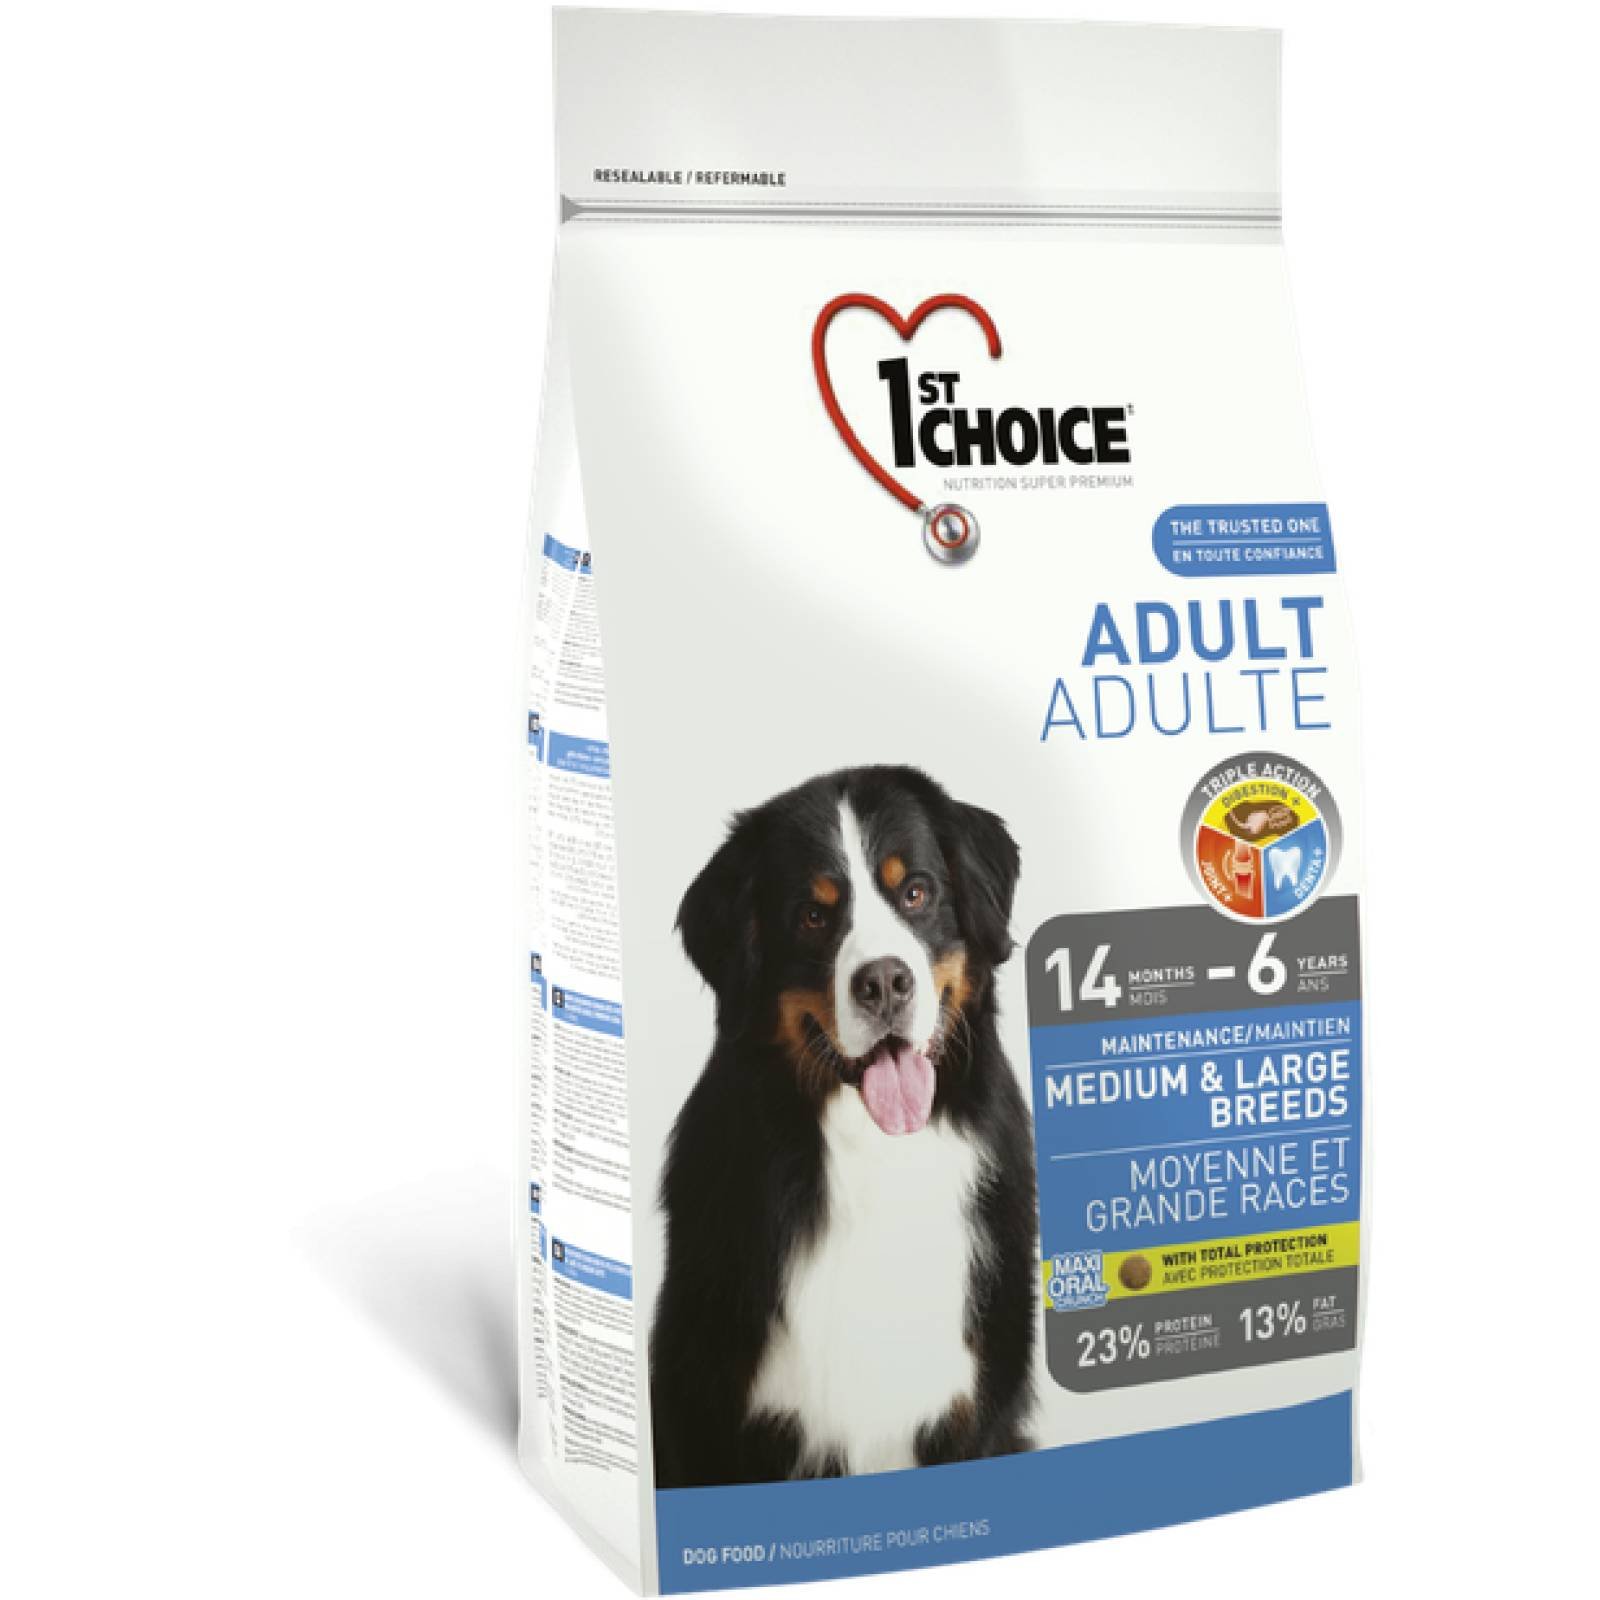 1ST Choice Alimento para Perro Adulto Raza Mediana y Grande Fórmula de pollo Edad: 14 meses  a 6 años 20 kg